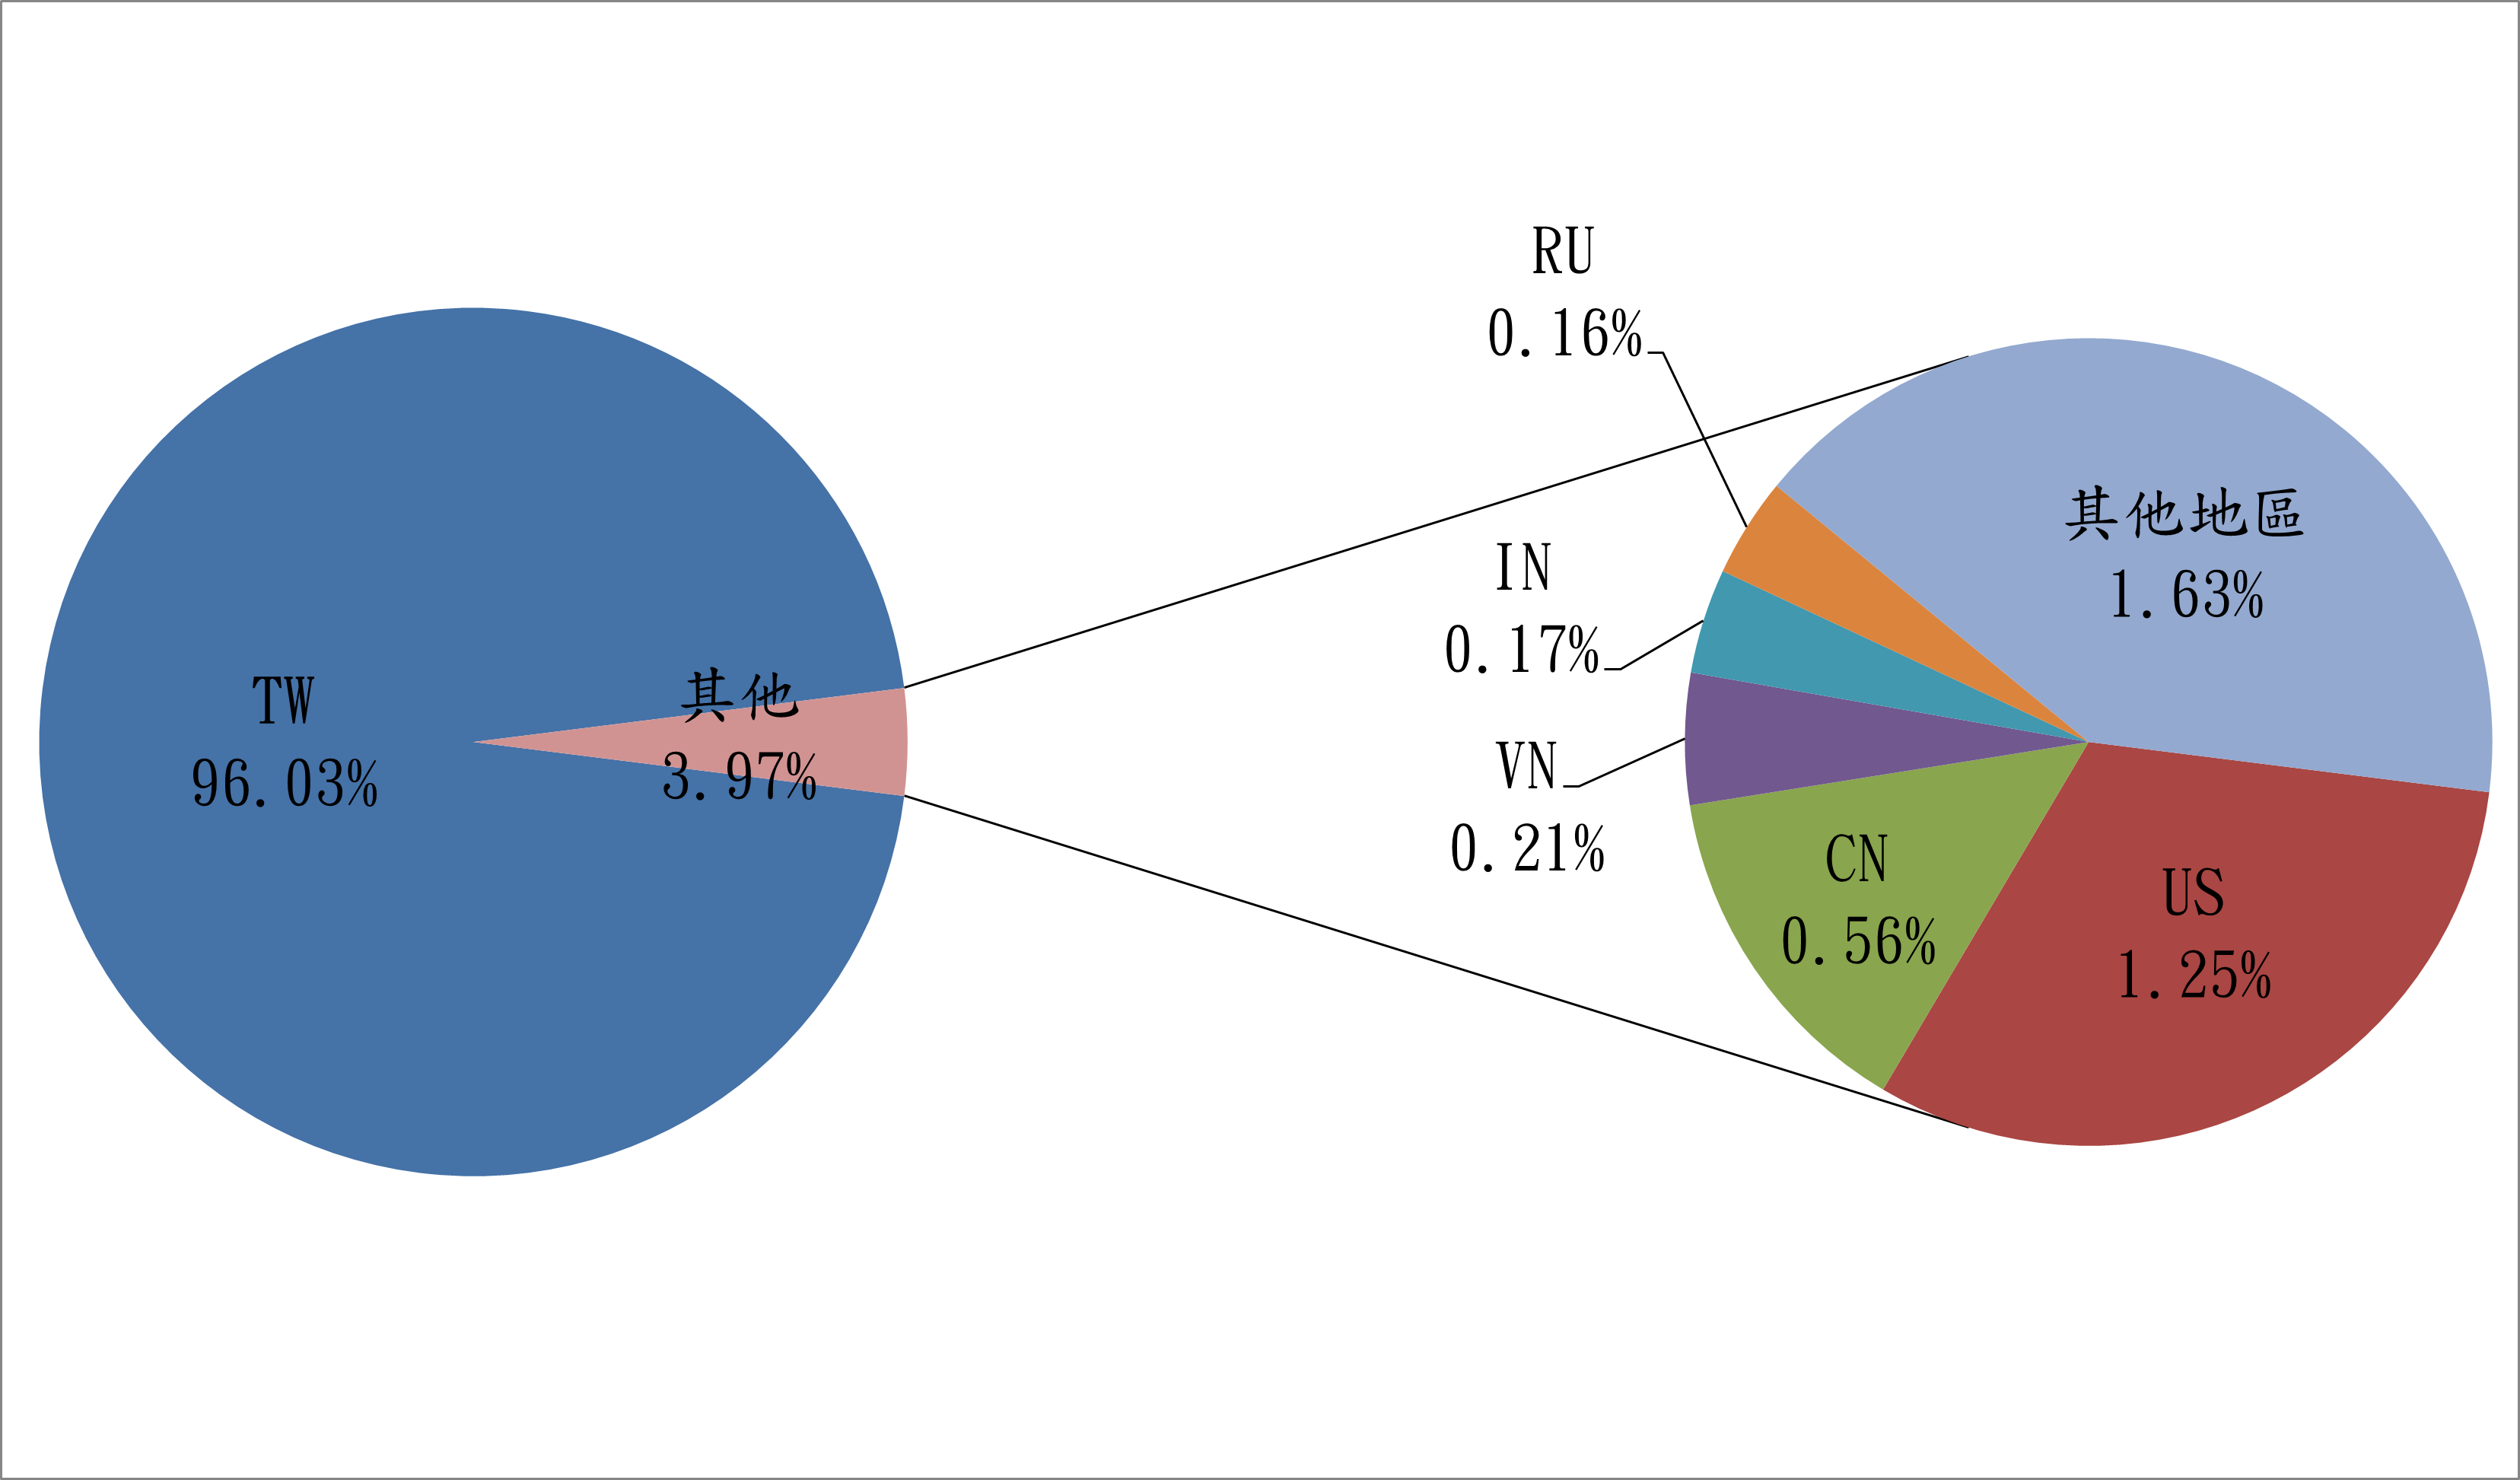 TW96.03% 其他3.97% RU0.16% IN0.17% VN0.21% CN0.56% US1.25% 其他地區1.63%